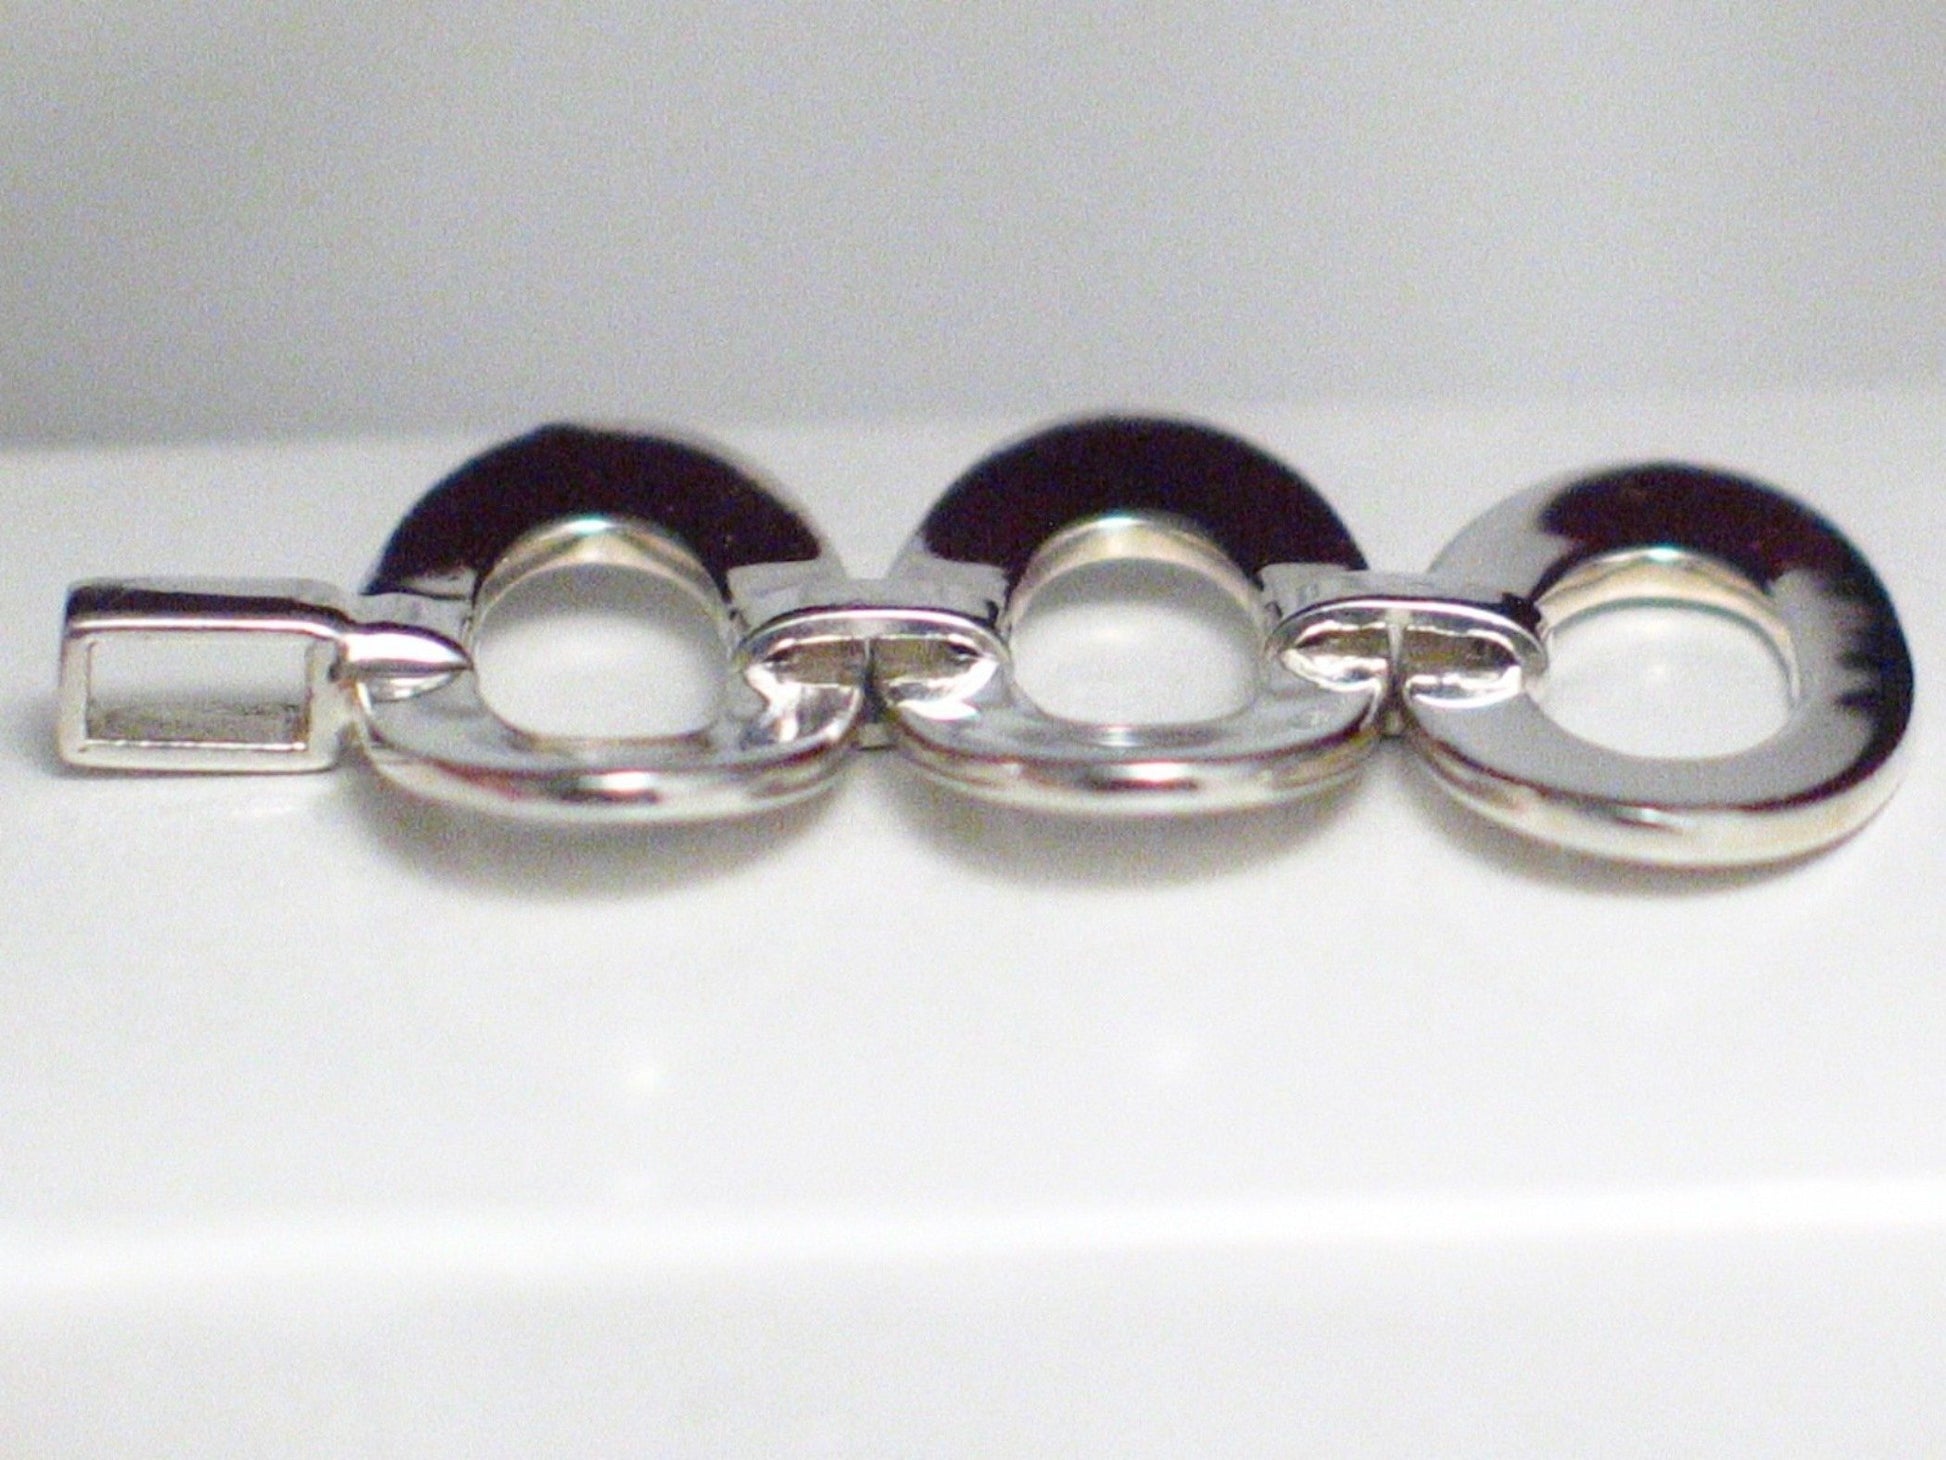 Triple Sideways | Sterling Silver Pendant w/ Unique Modern Design - Blingschlingers Jewelry